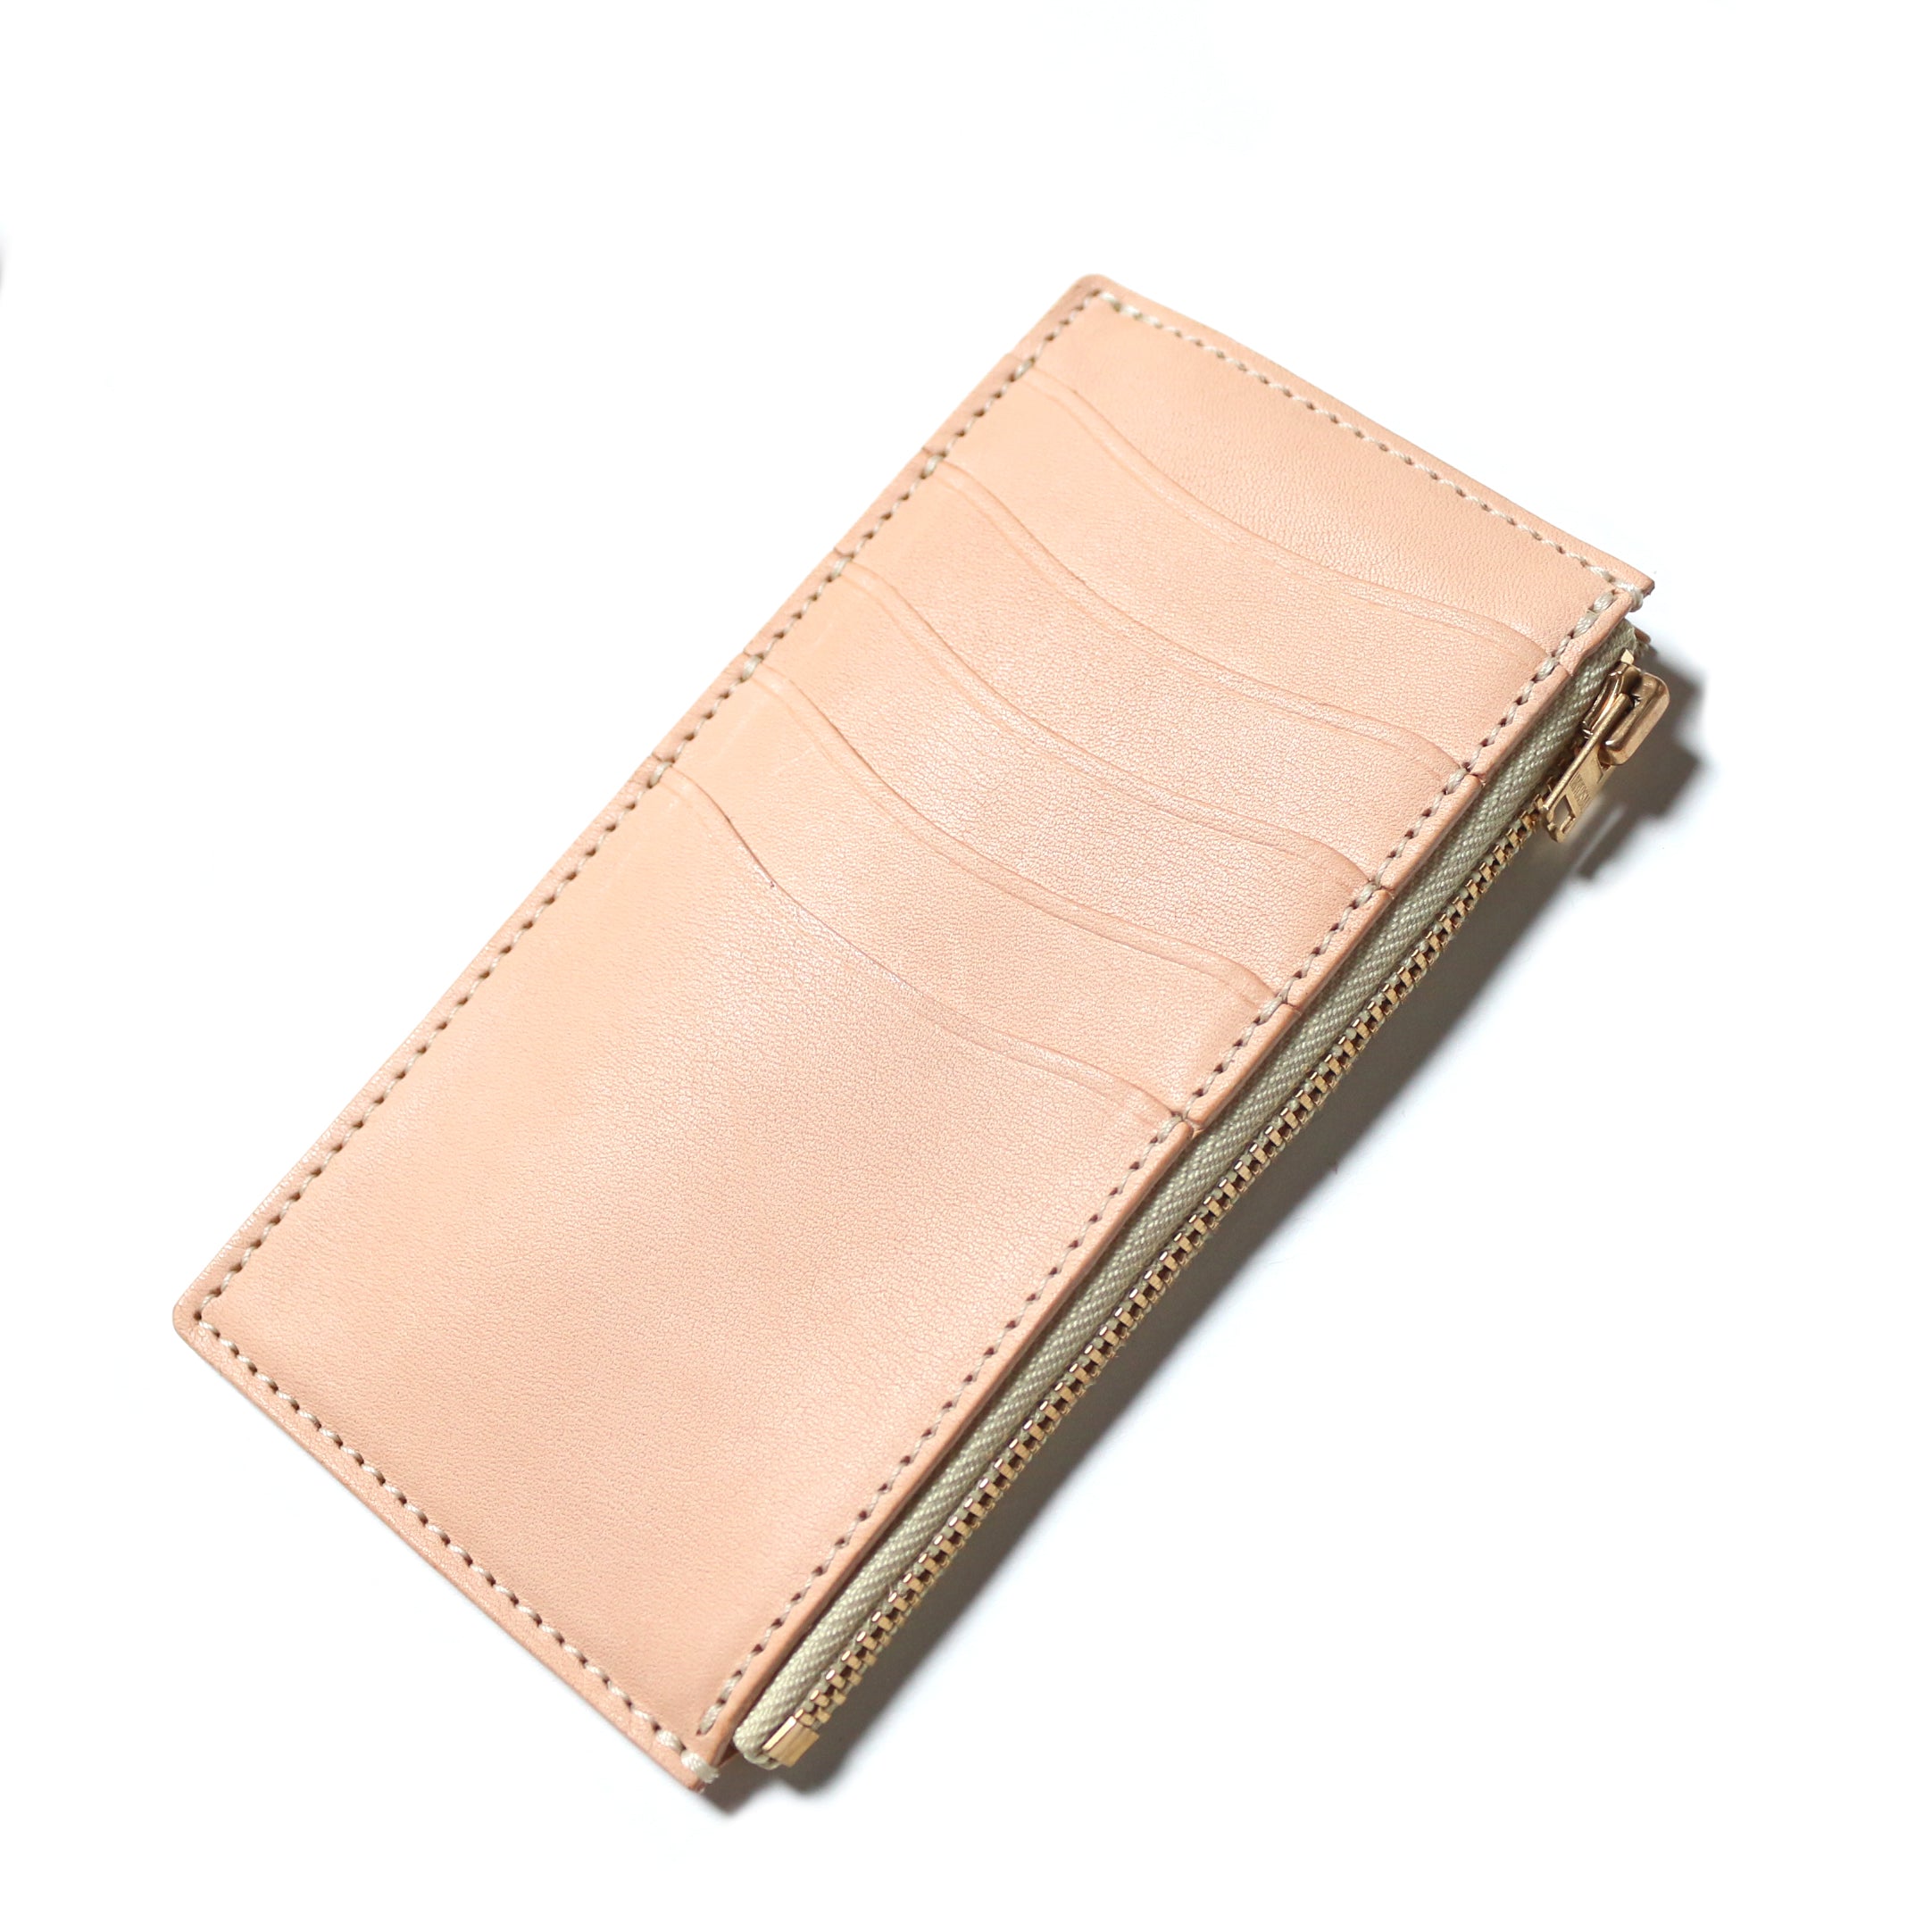 SL0190 cordovan vertical zip wallet